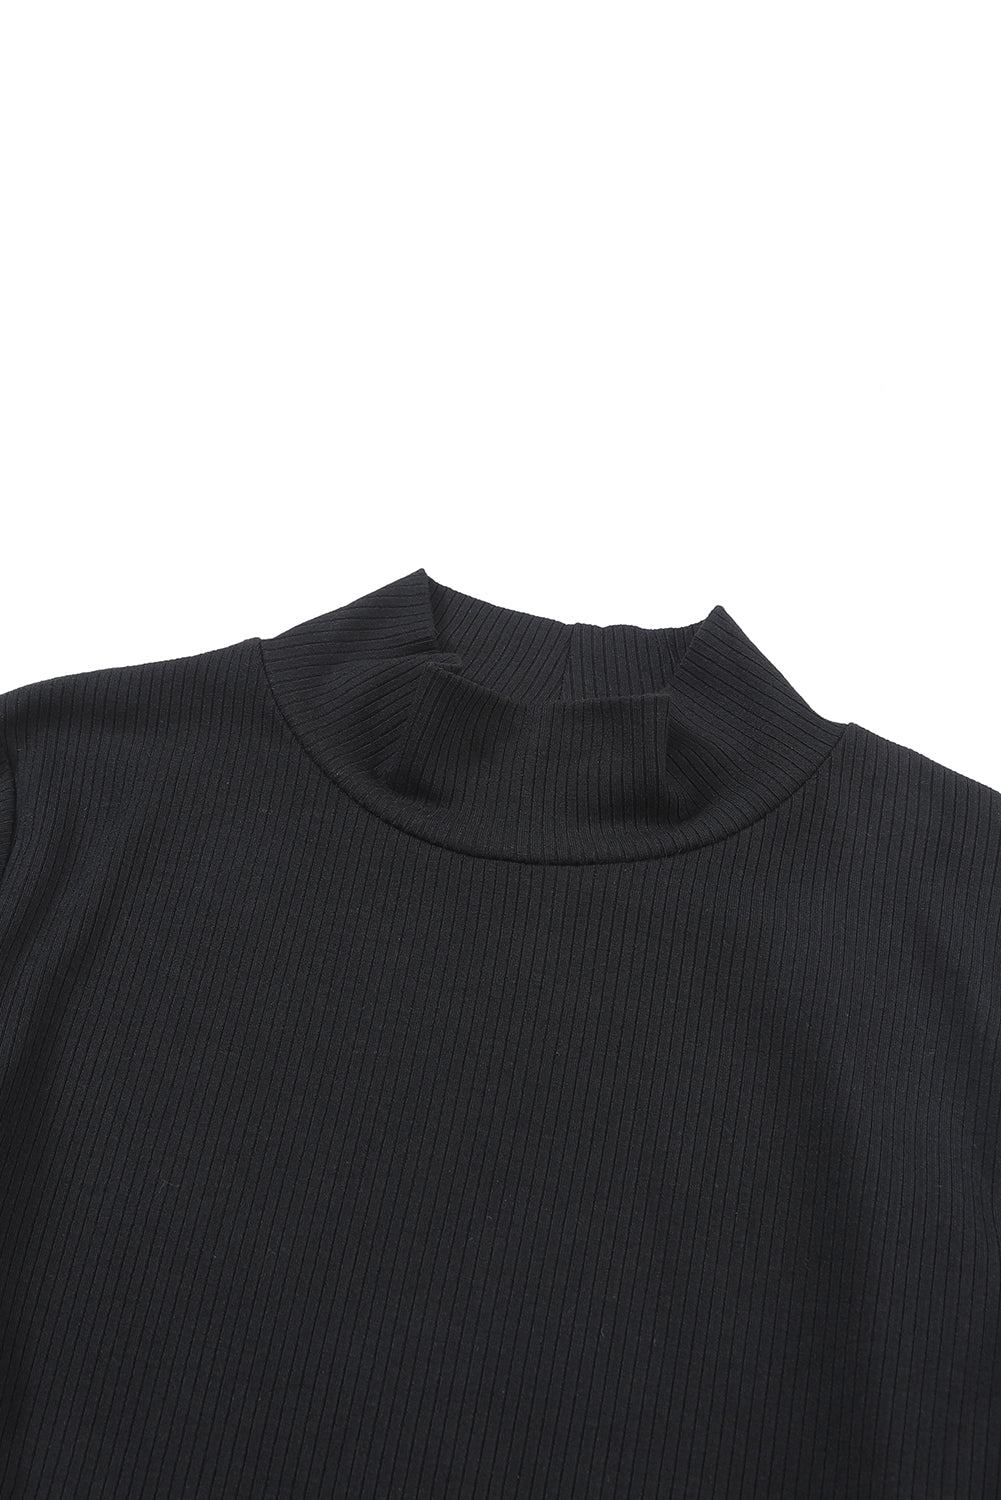 Crna rebrasta pletena majica s dugim rukavima s visokim ovratnikom